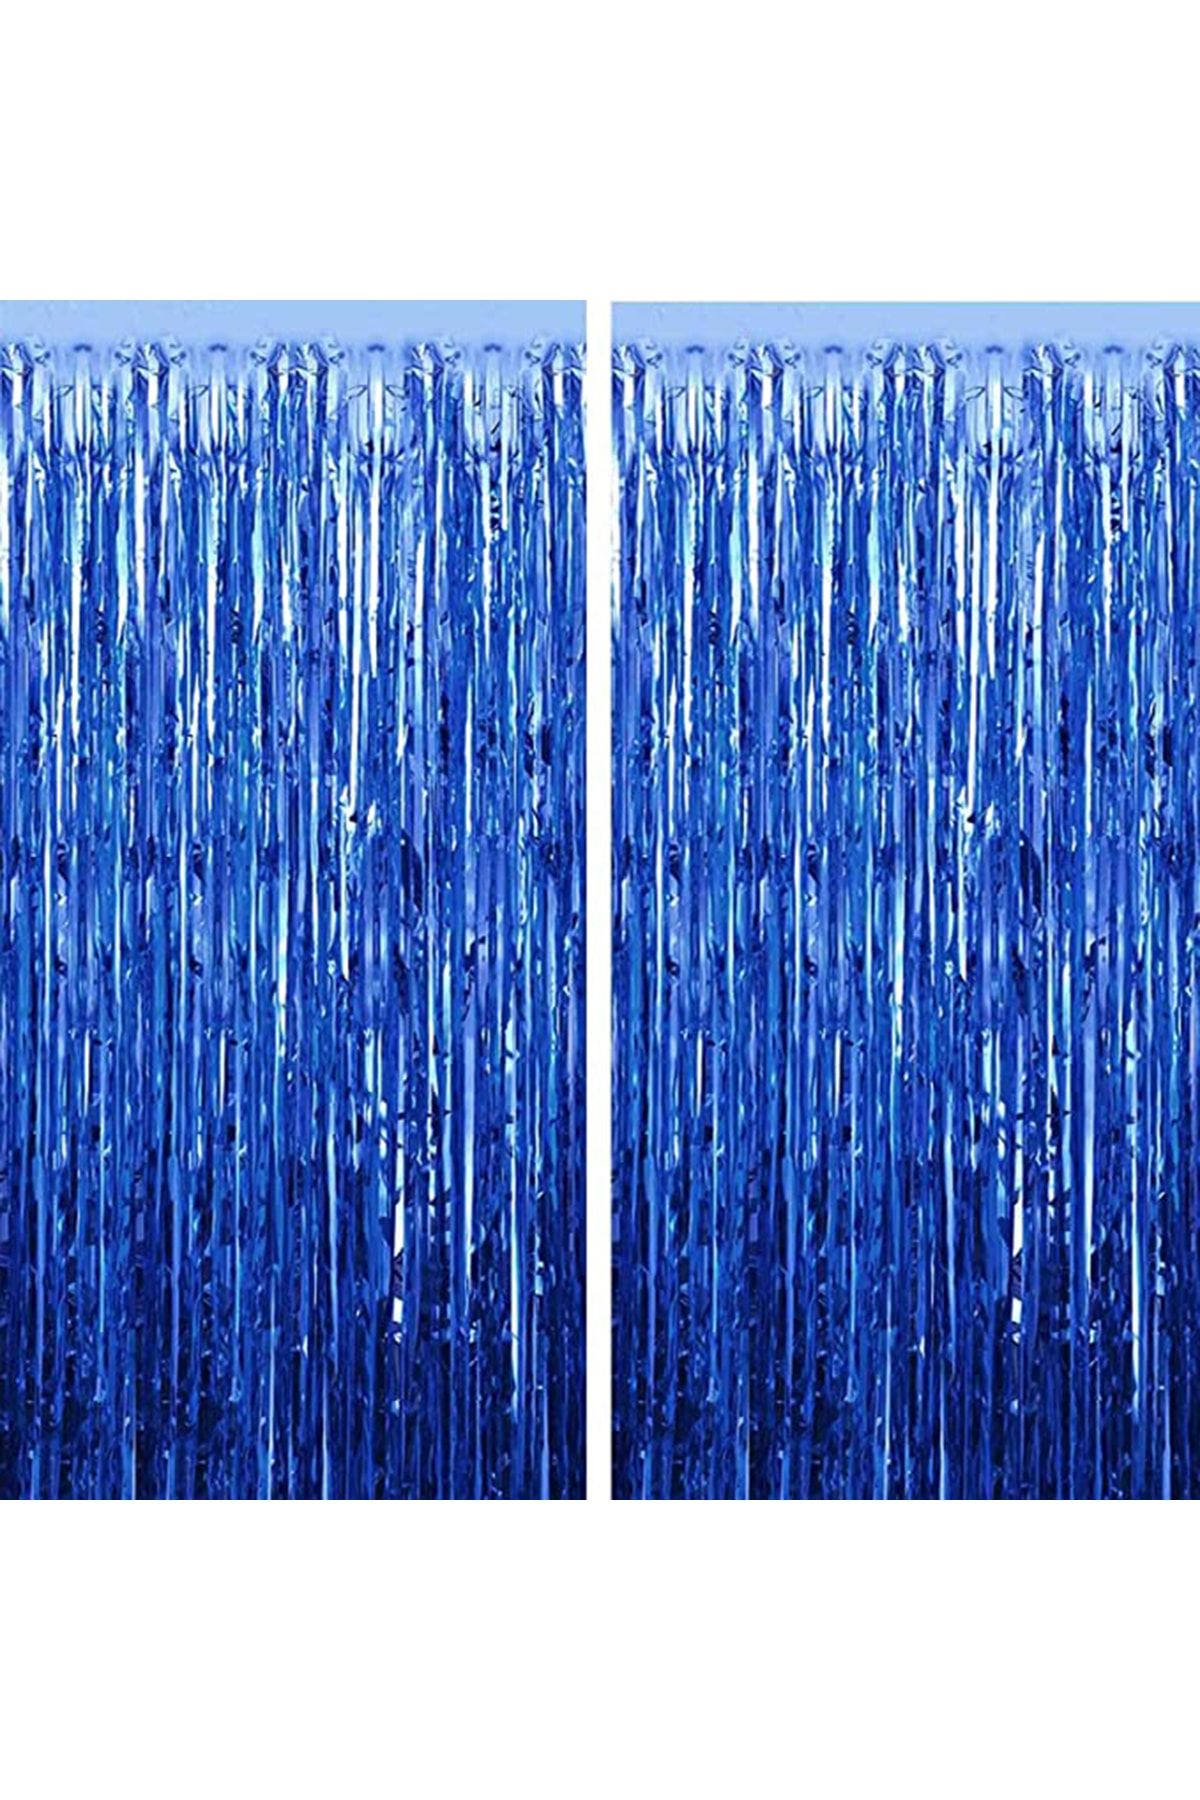 2li Lacivert Koyu Mavi Simli Uzun Kapı Duvar Parti Fon Arka Perde Metalik Doğum Günü Perdesi_0